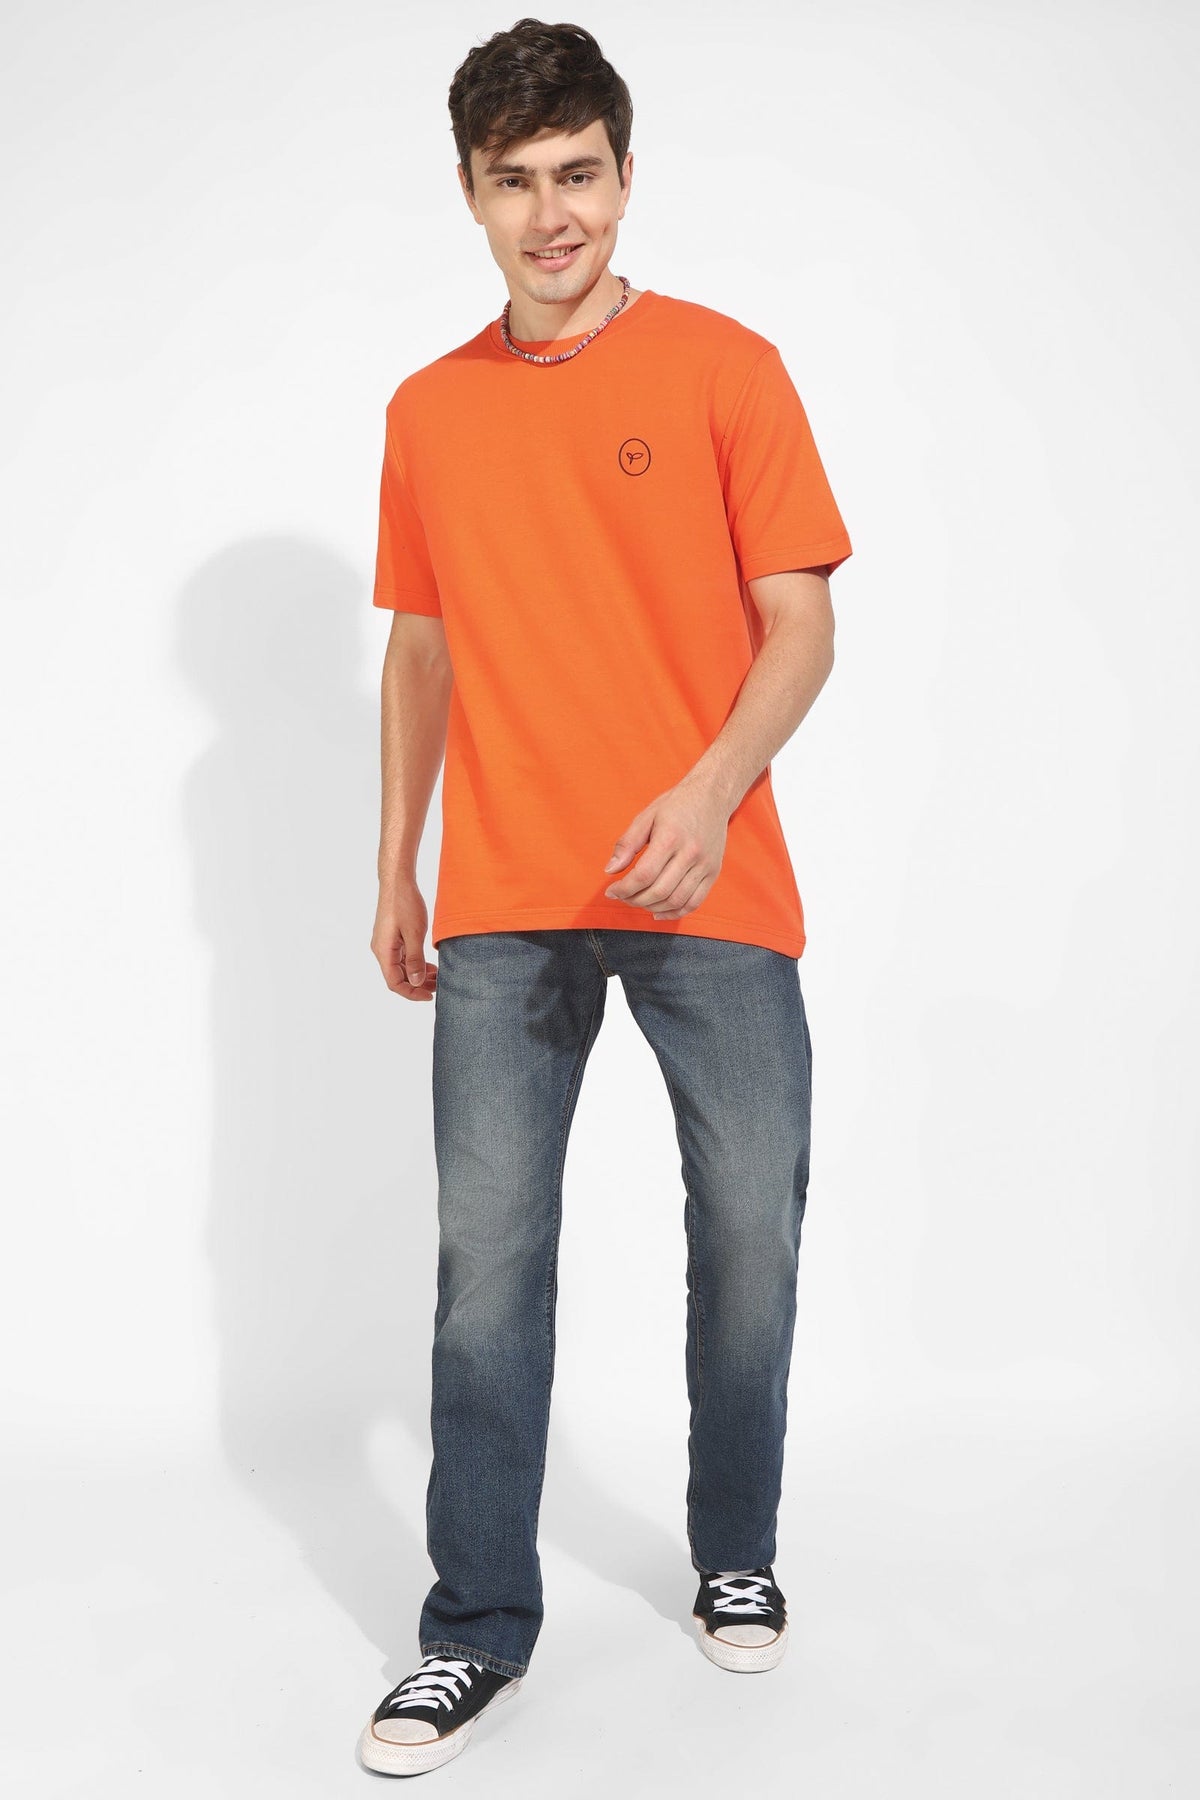 Orange Oversized Unisex T-Shirt By Purple Mango